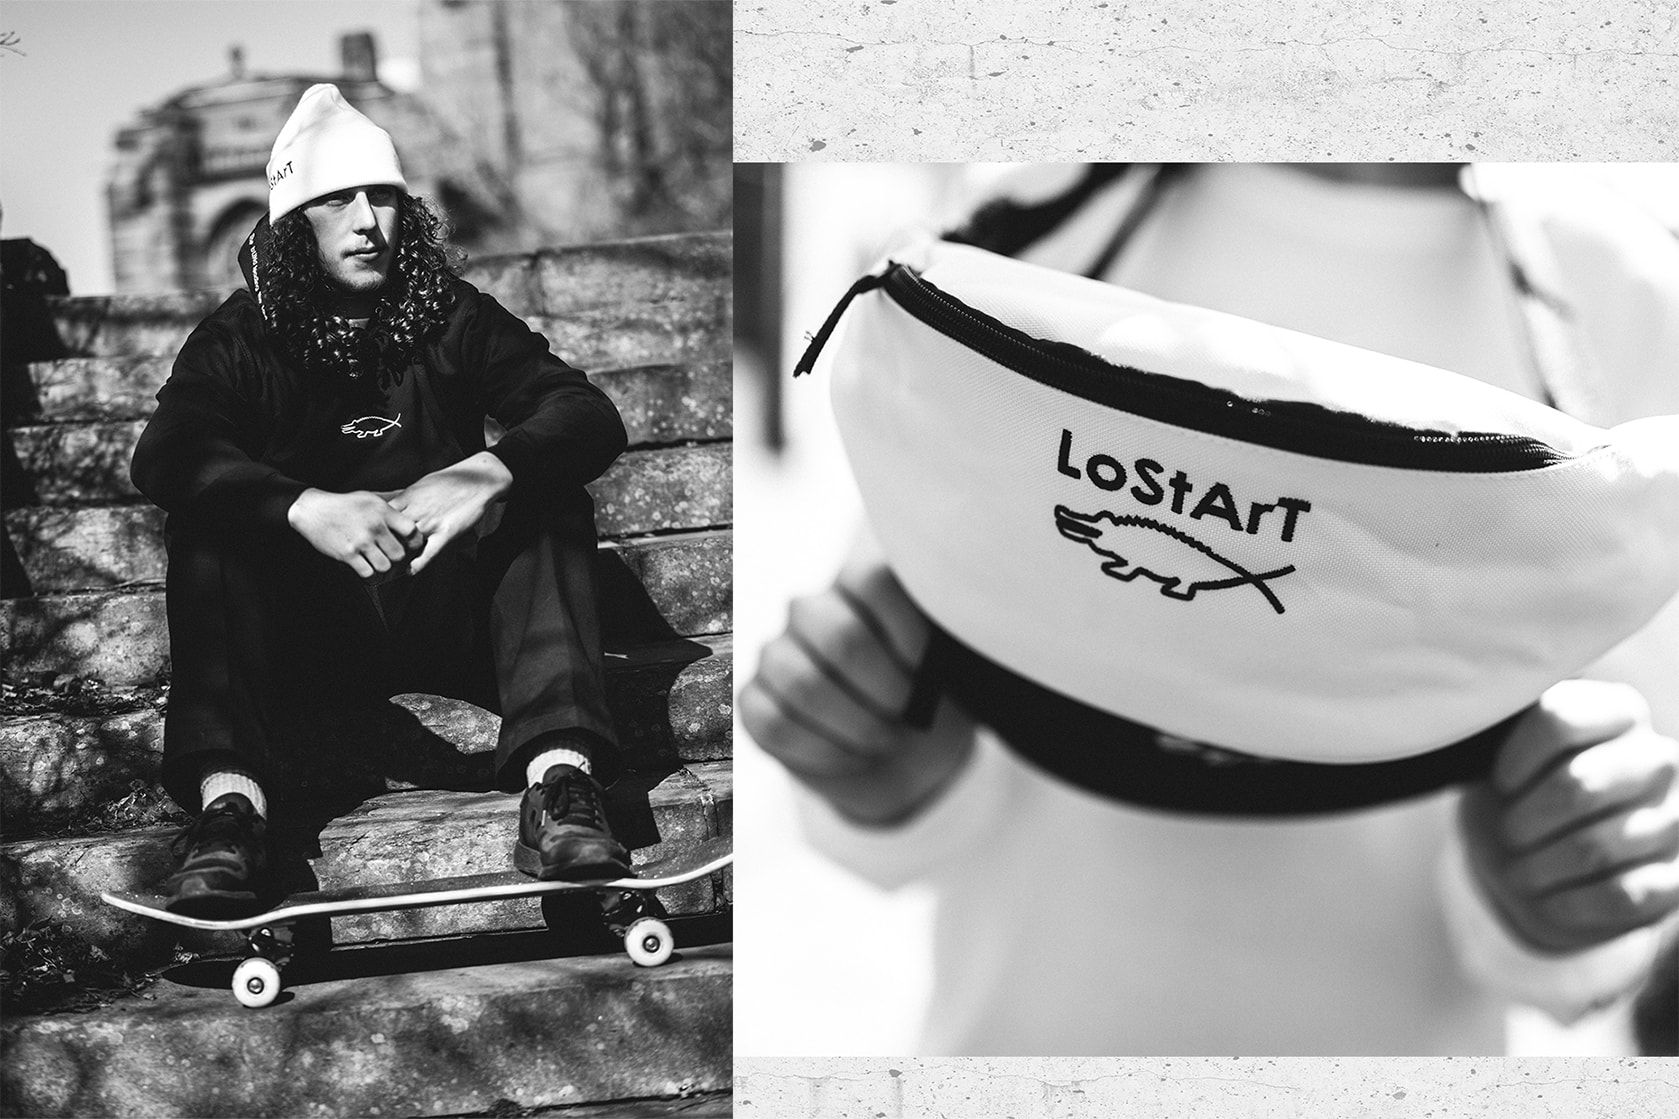 Lost Art Skate Store Liverpool Spring 2018 Capsule skateboarding lookbooks skatewear clothing streetwear